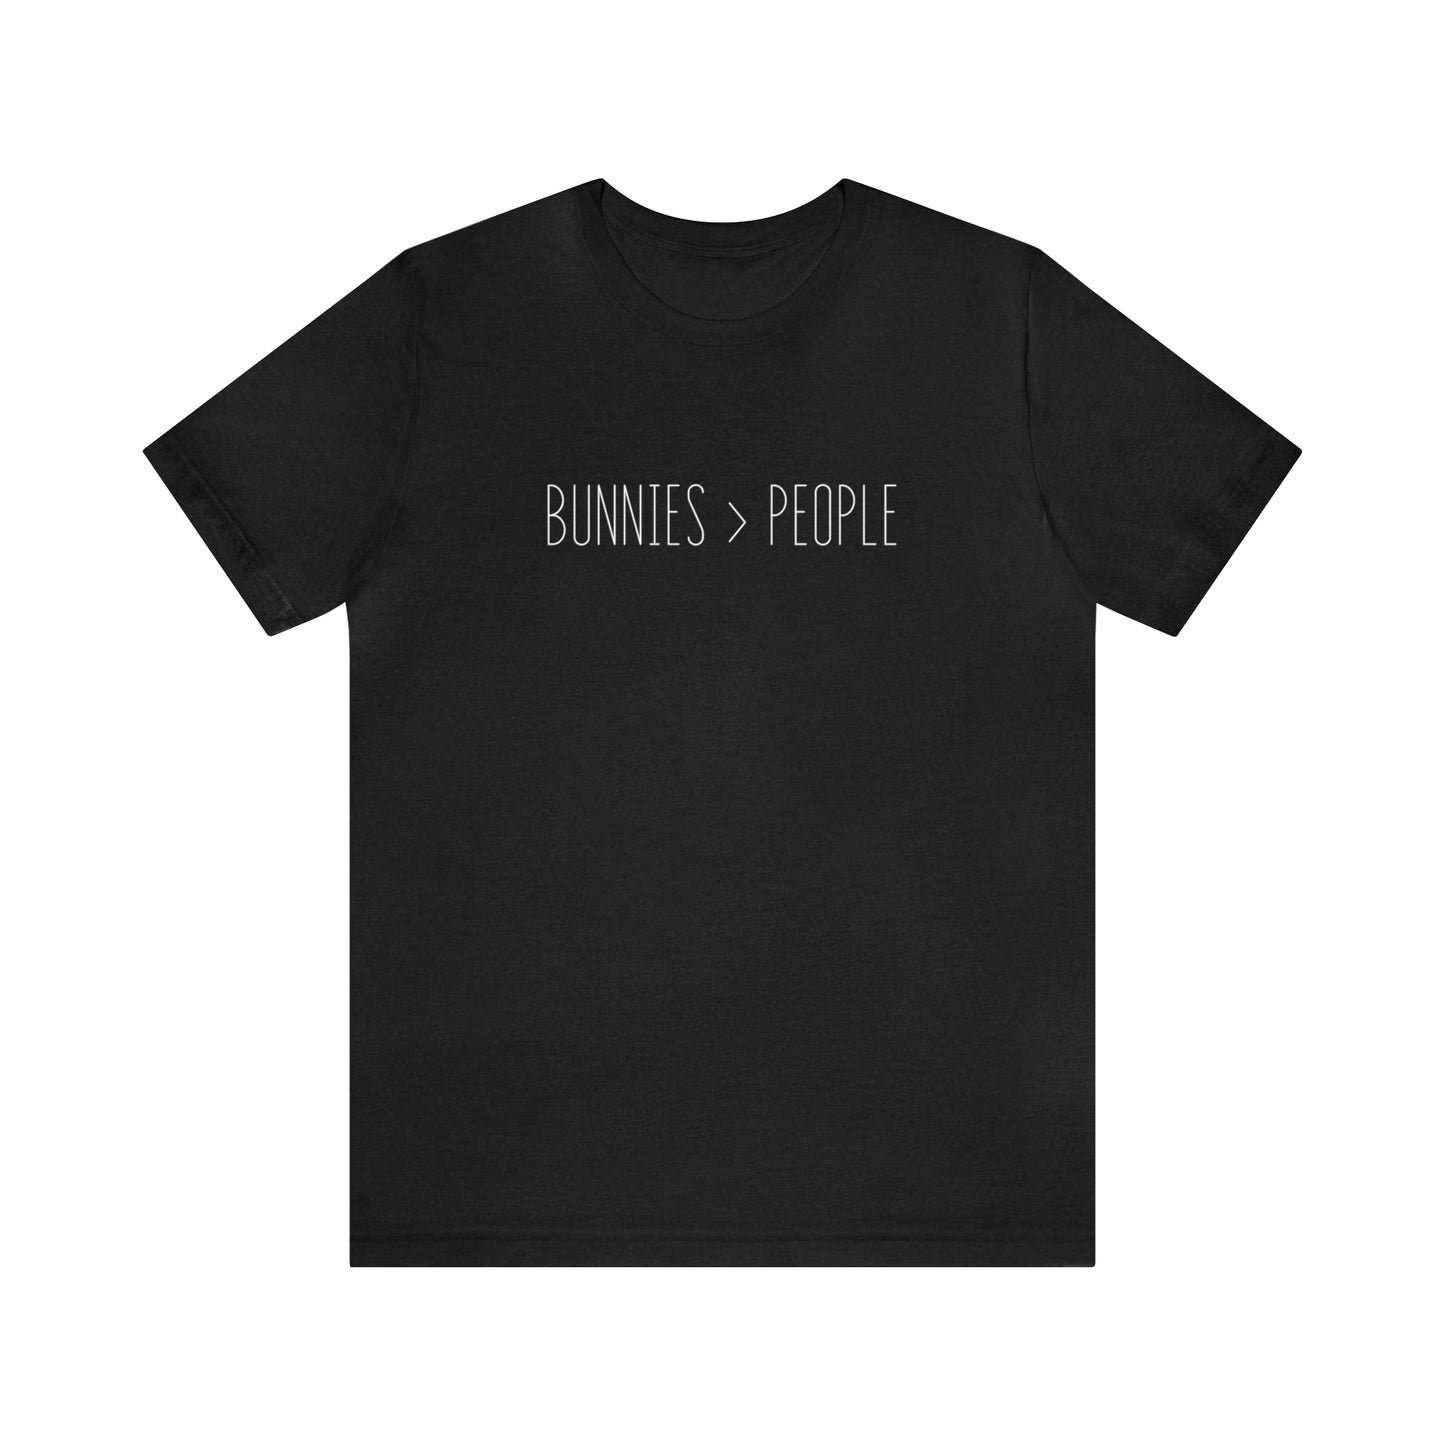 Bunnies > People Tee